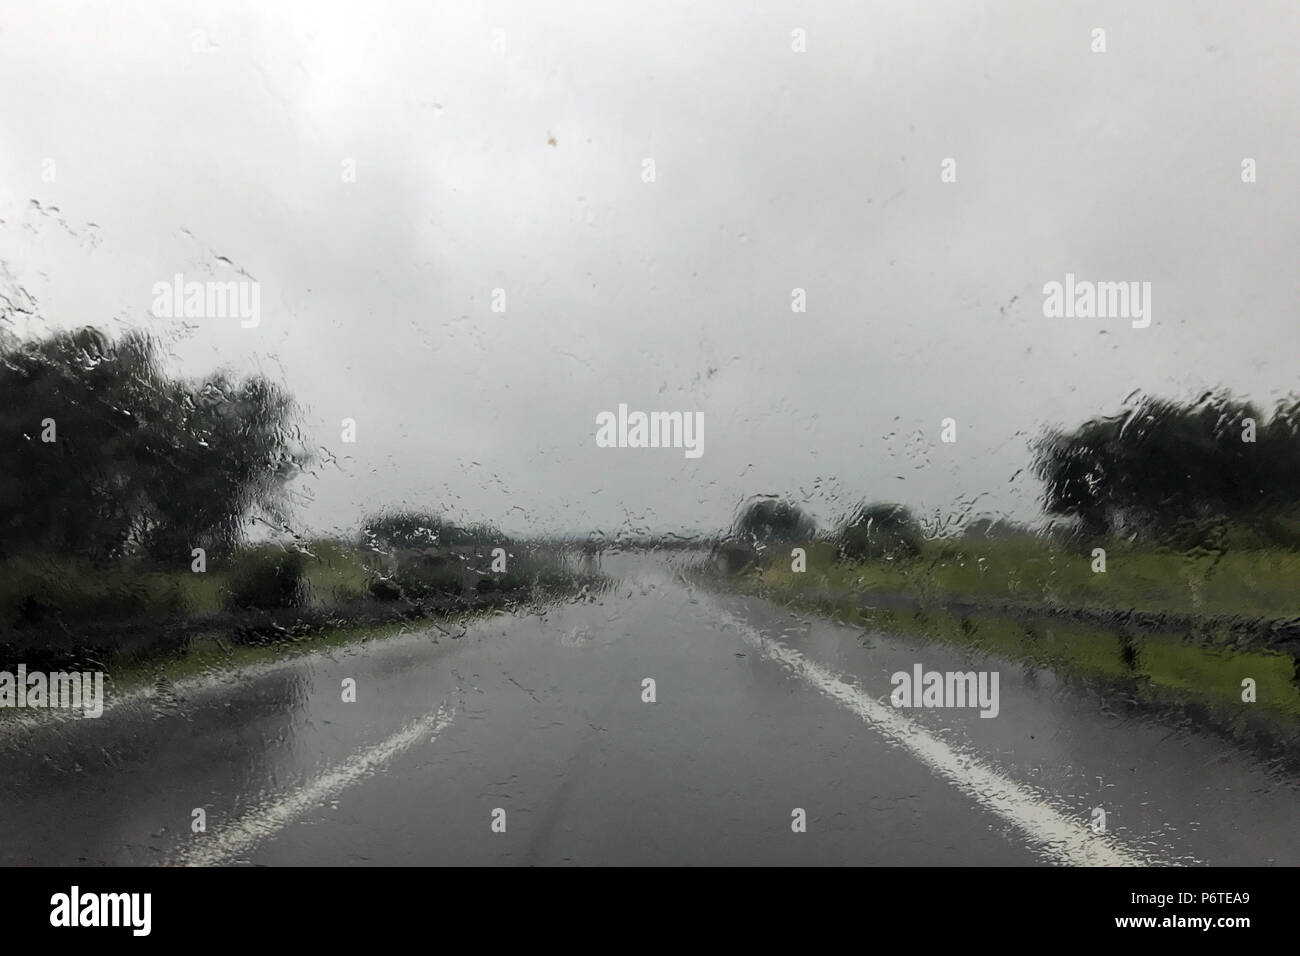 Berlino, Germania, scarsa visibilità durante una forte pioggia su una strada di campagna Foto Stock